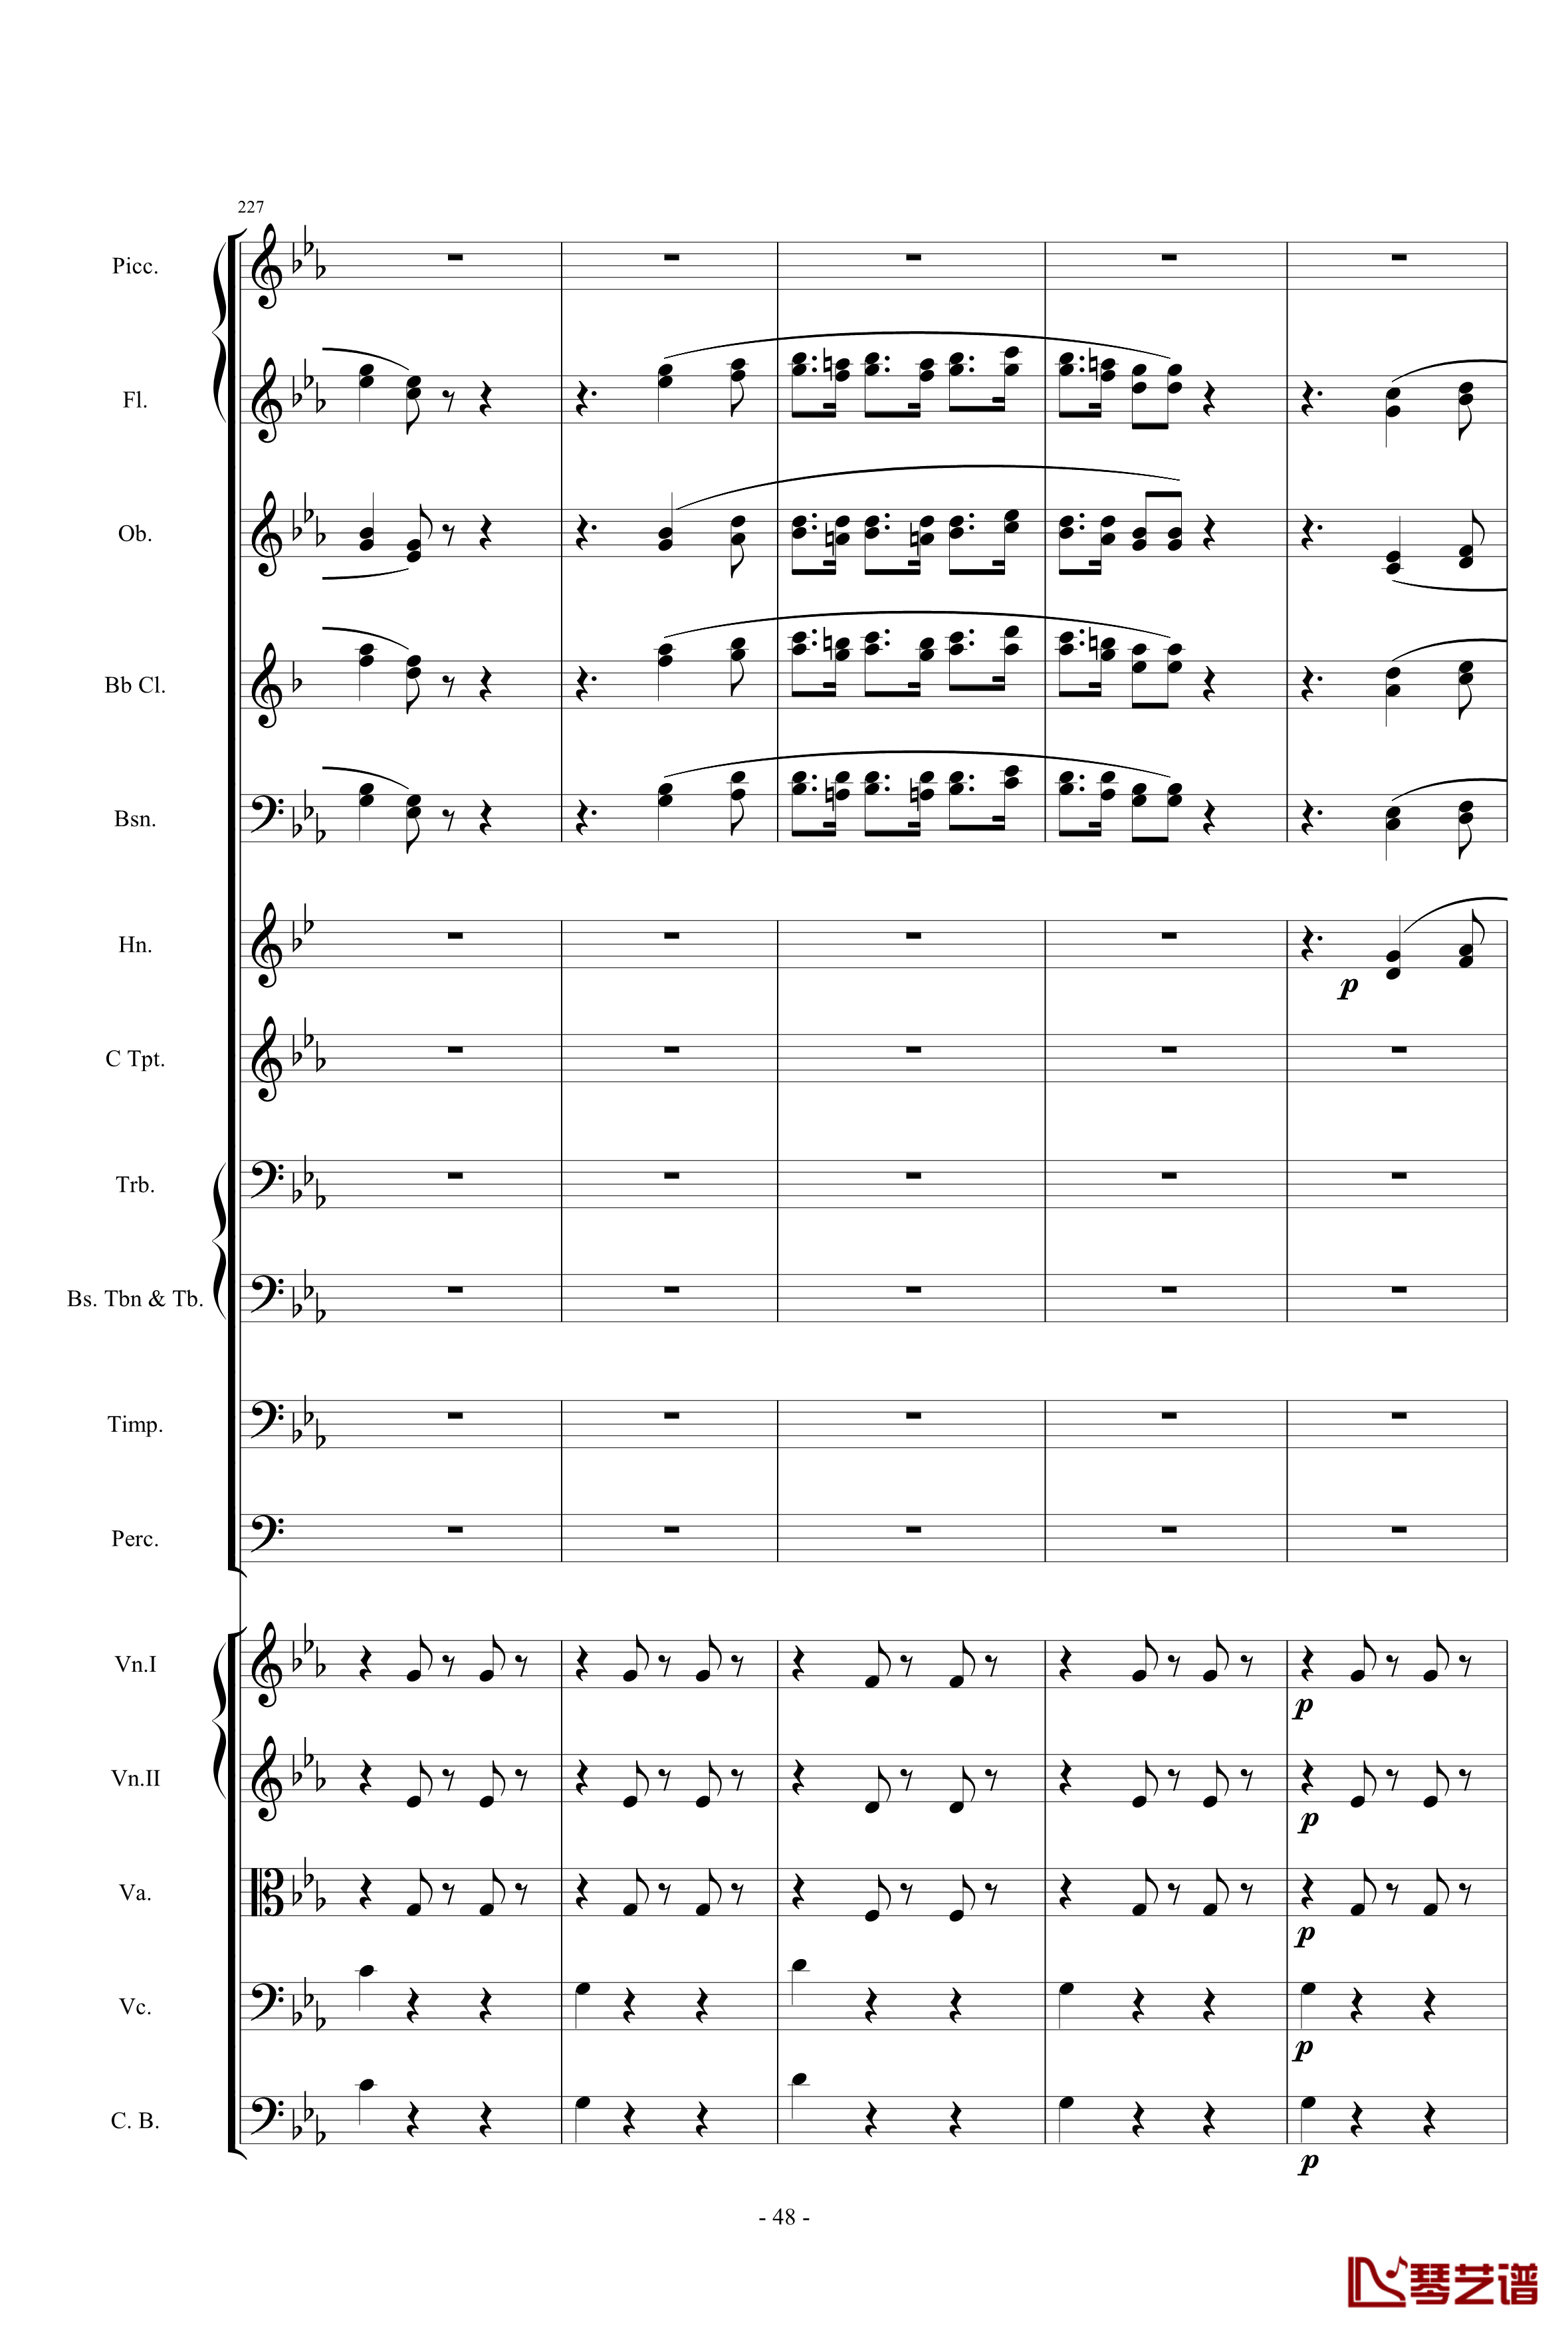 愤怒的小鸟交响曲第三乐章Op.5 no.3钢琴谱-1057257848